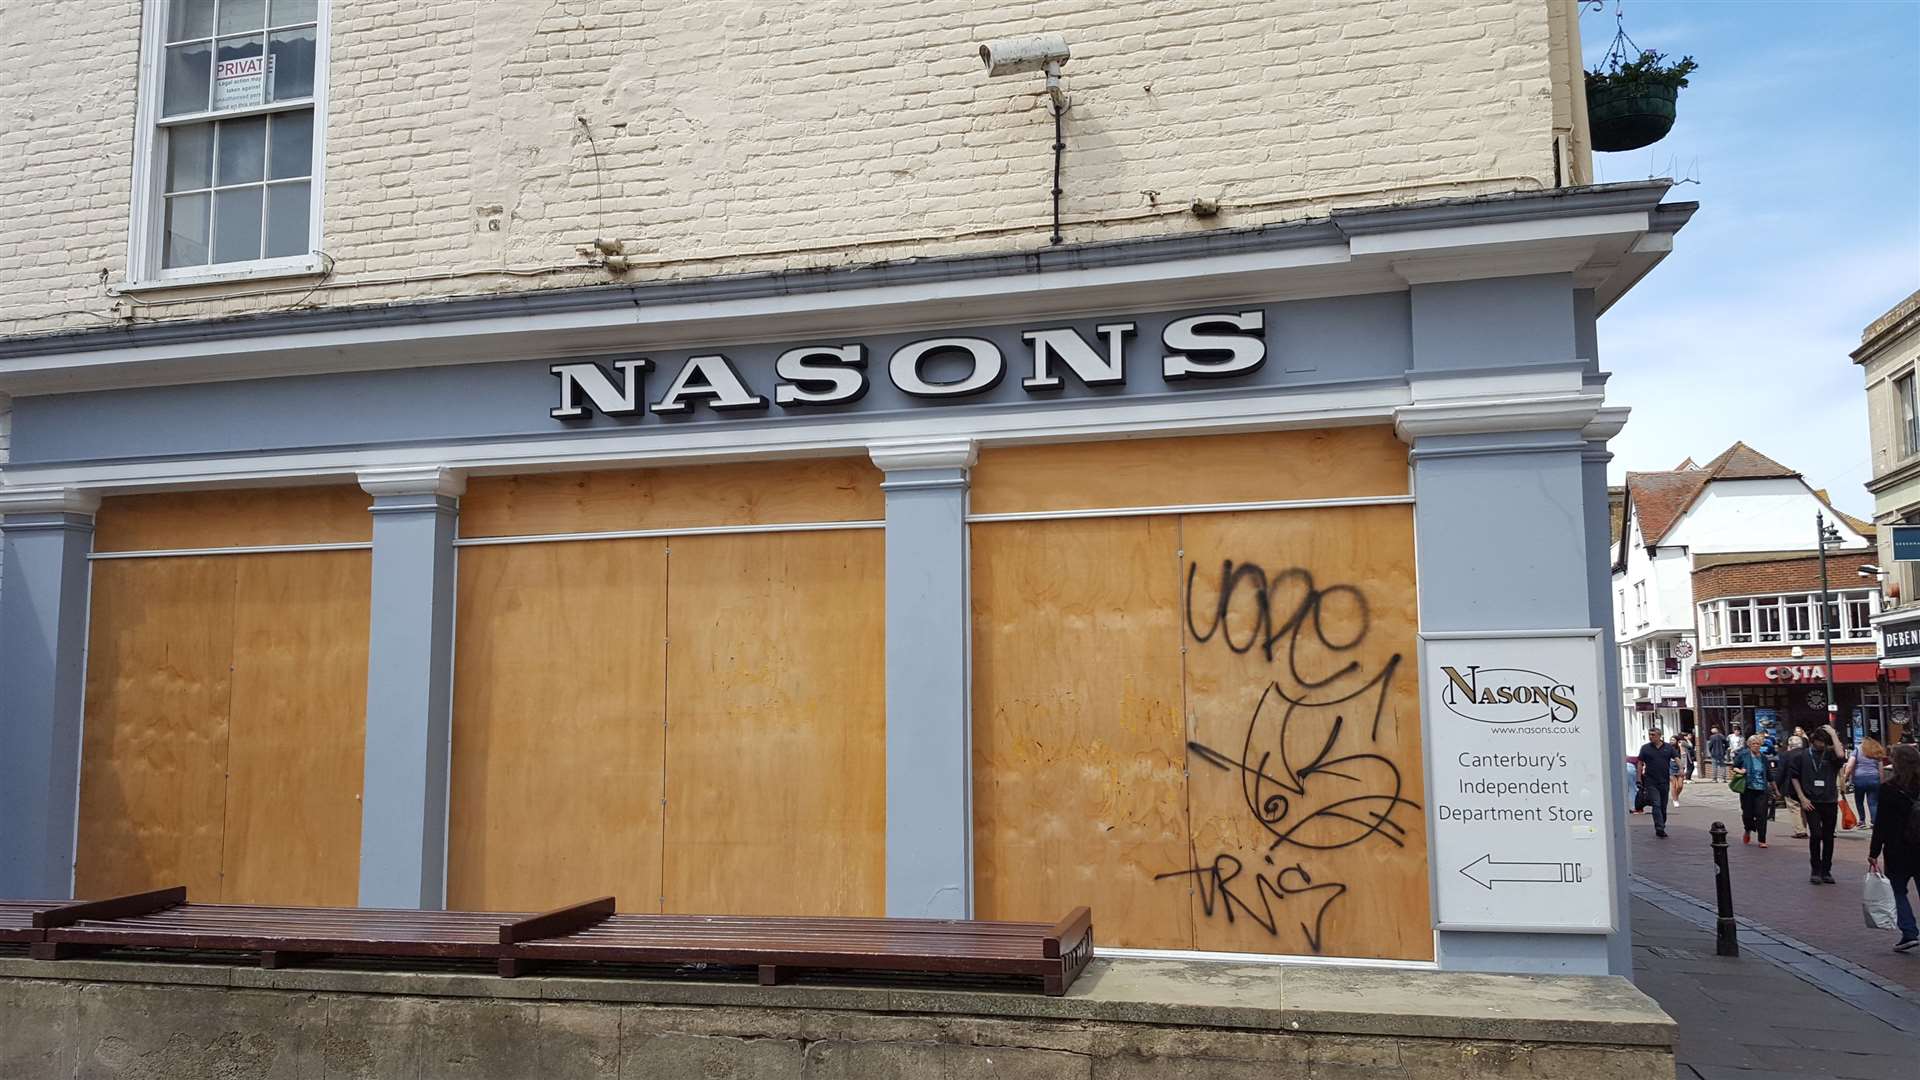 Nasons department store shut last year